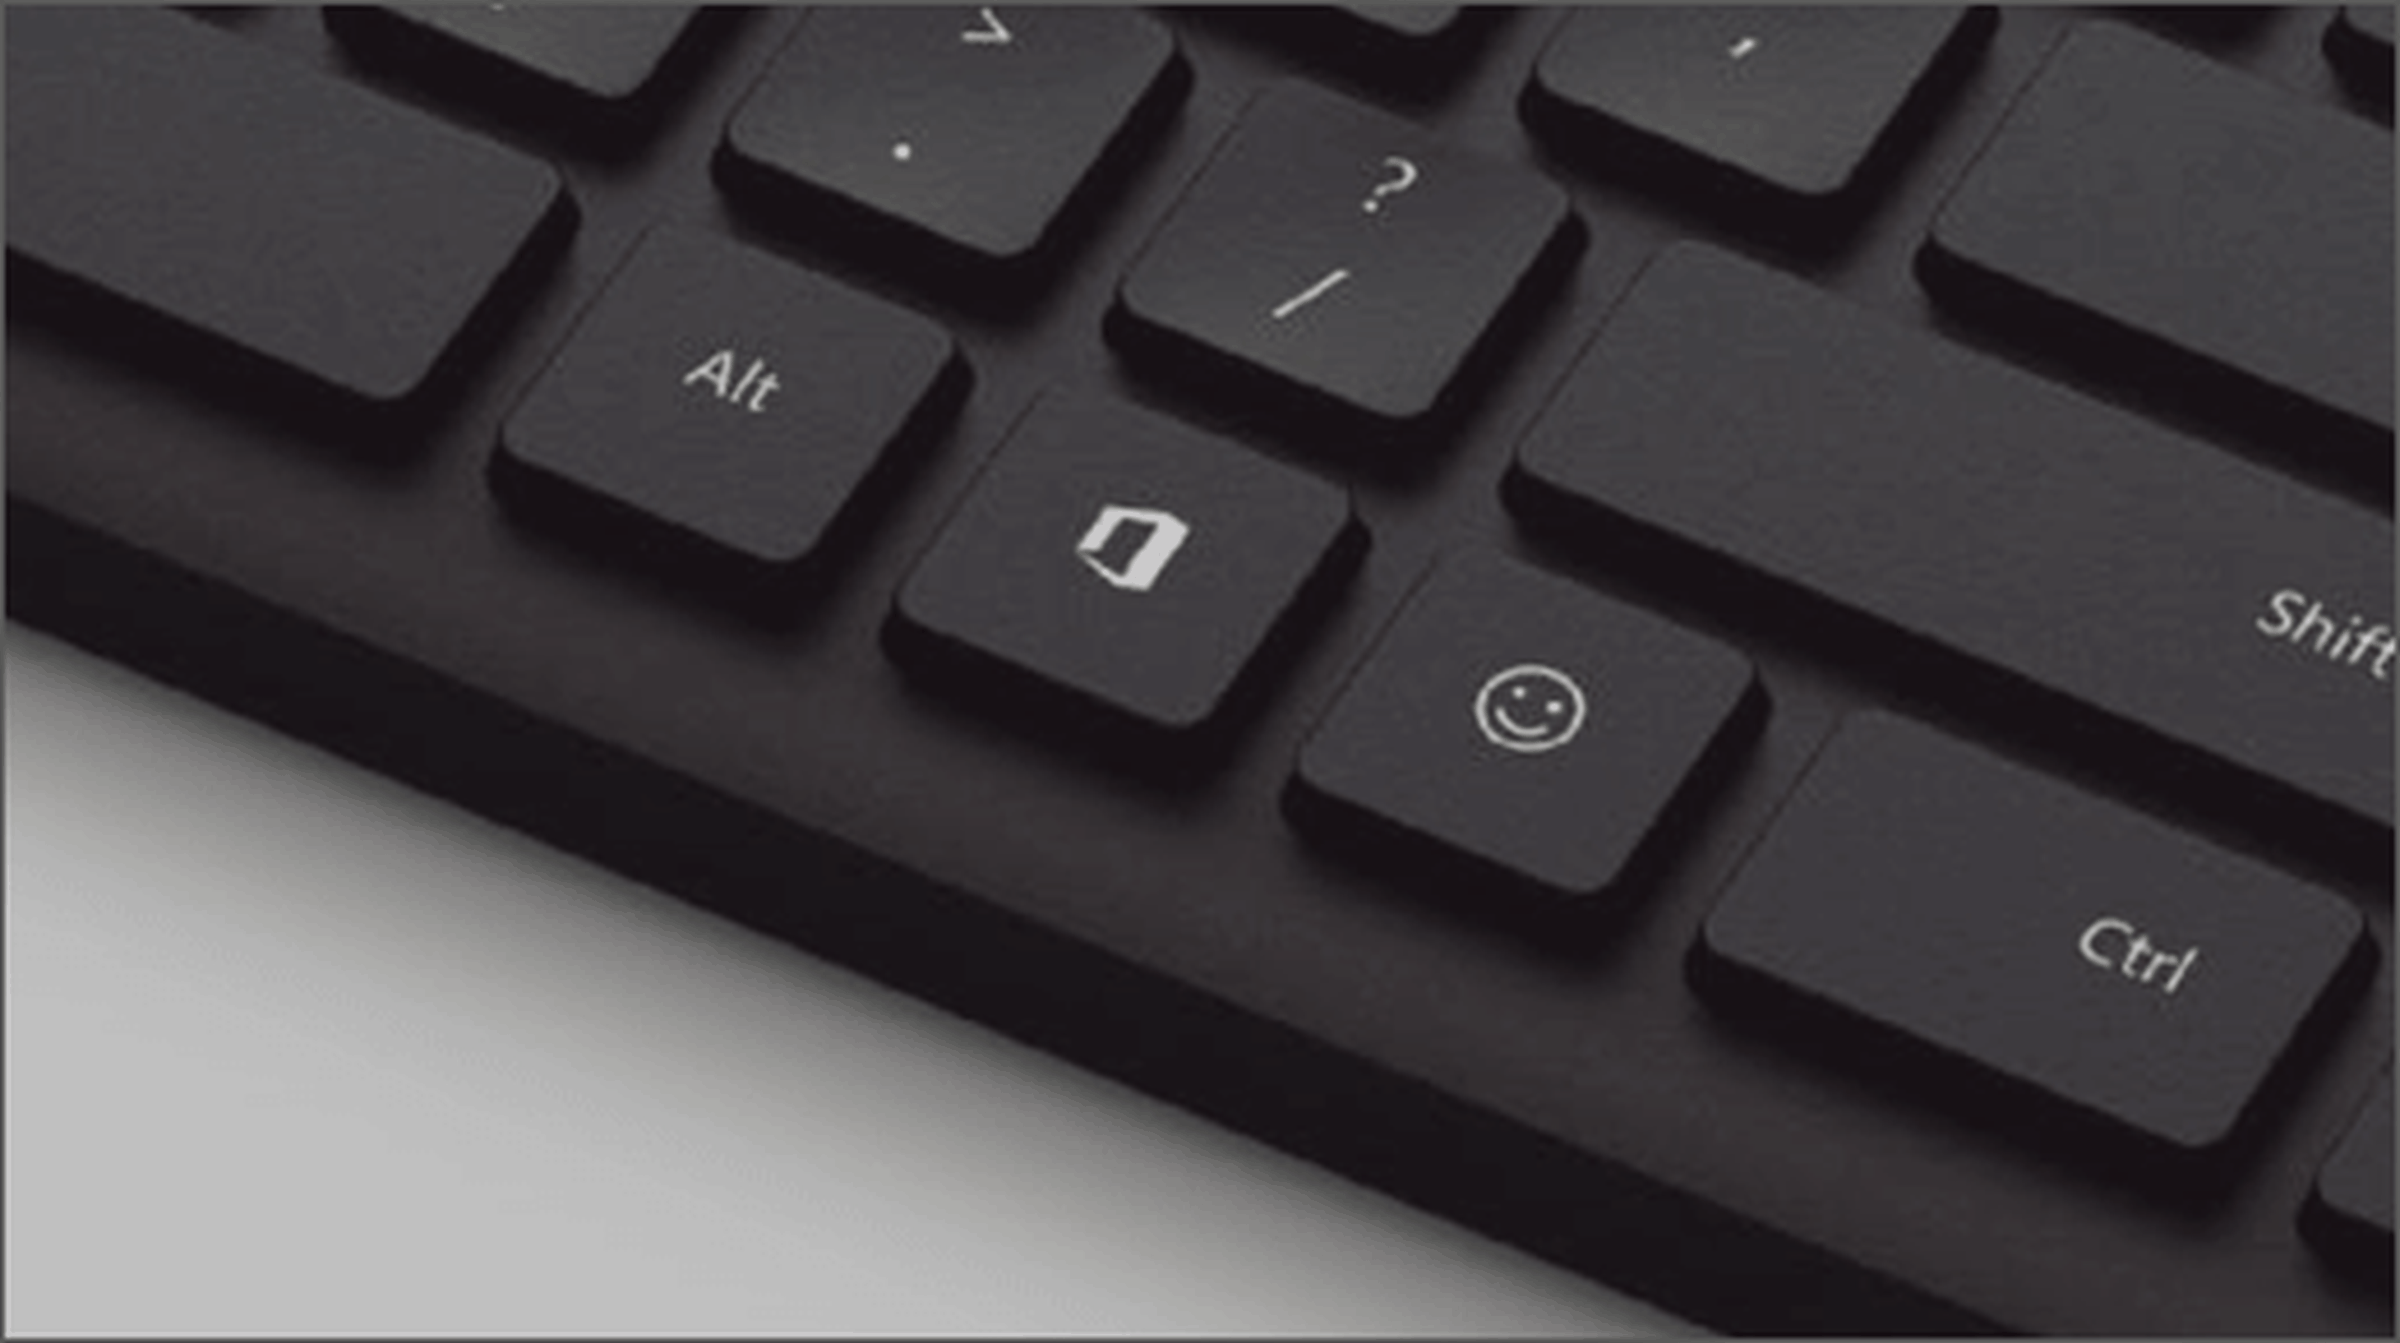 Microsoft key ru. Кнопка Майкрософт офис на клавиатуре. Офисная кнопка прорезь клавиатура. Клавиша делит. Кнопка Office Jump.